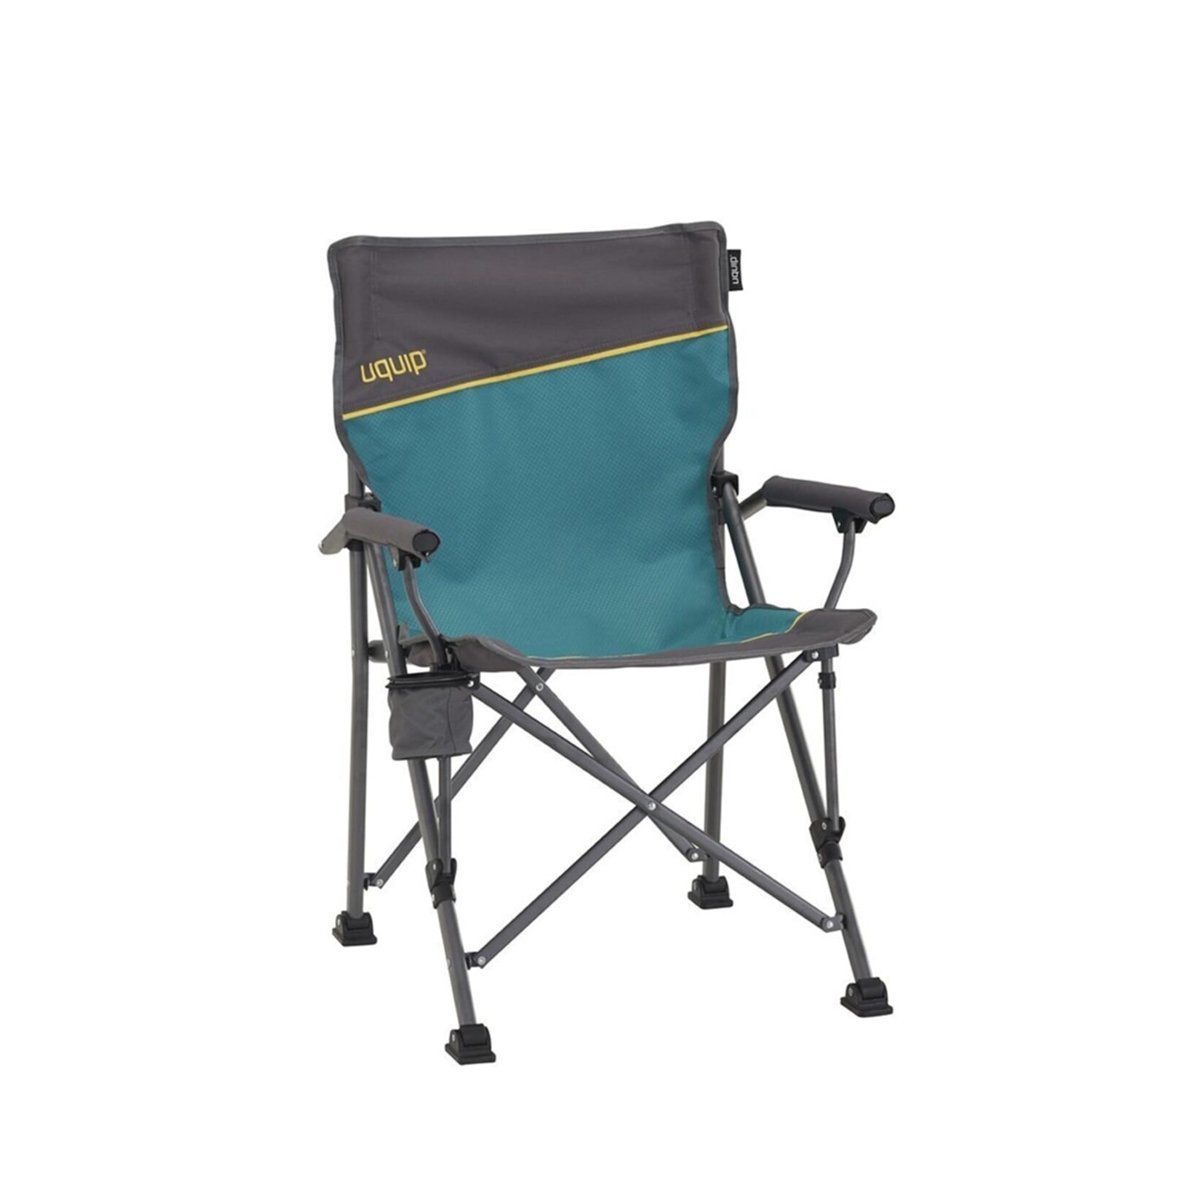 UQUIP Roxy Yüksek Konforlu & Takviyeli Katlanır Kamp Sandalyesi - Renkli - 1